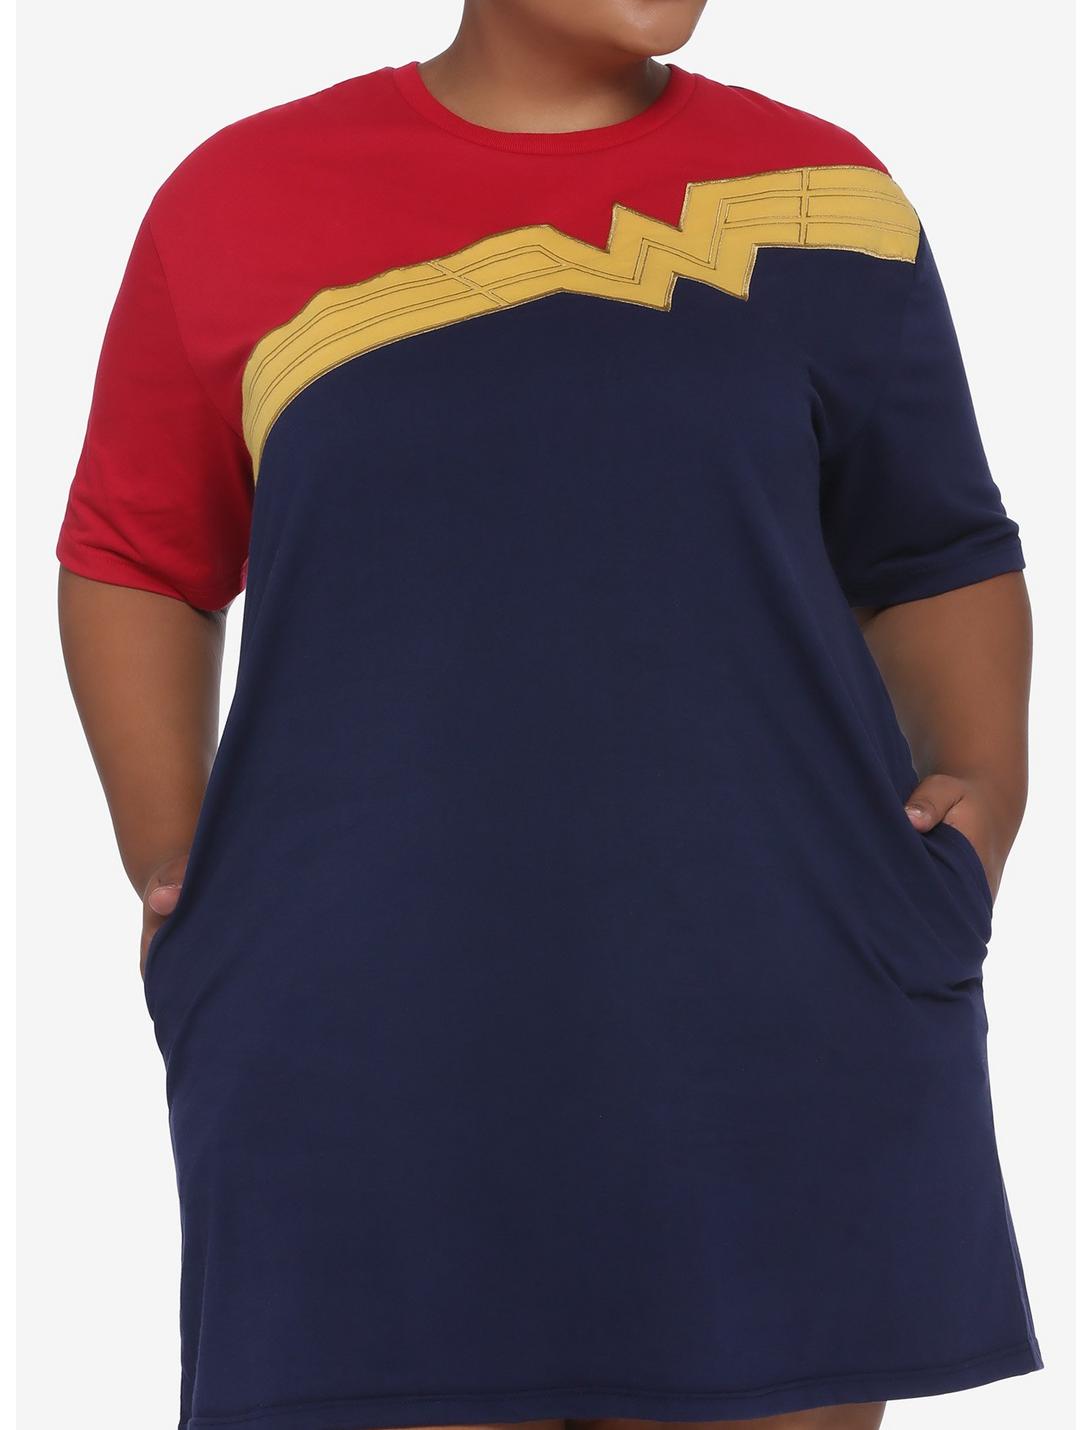 Her Universe DC Comics Wonder Woman 1984 Color-Block T-Shirt Dress Plus Size, MULTI, hi-res